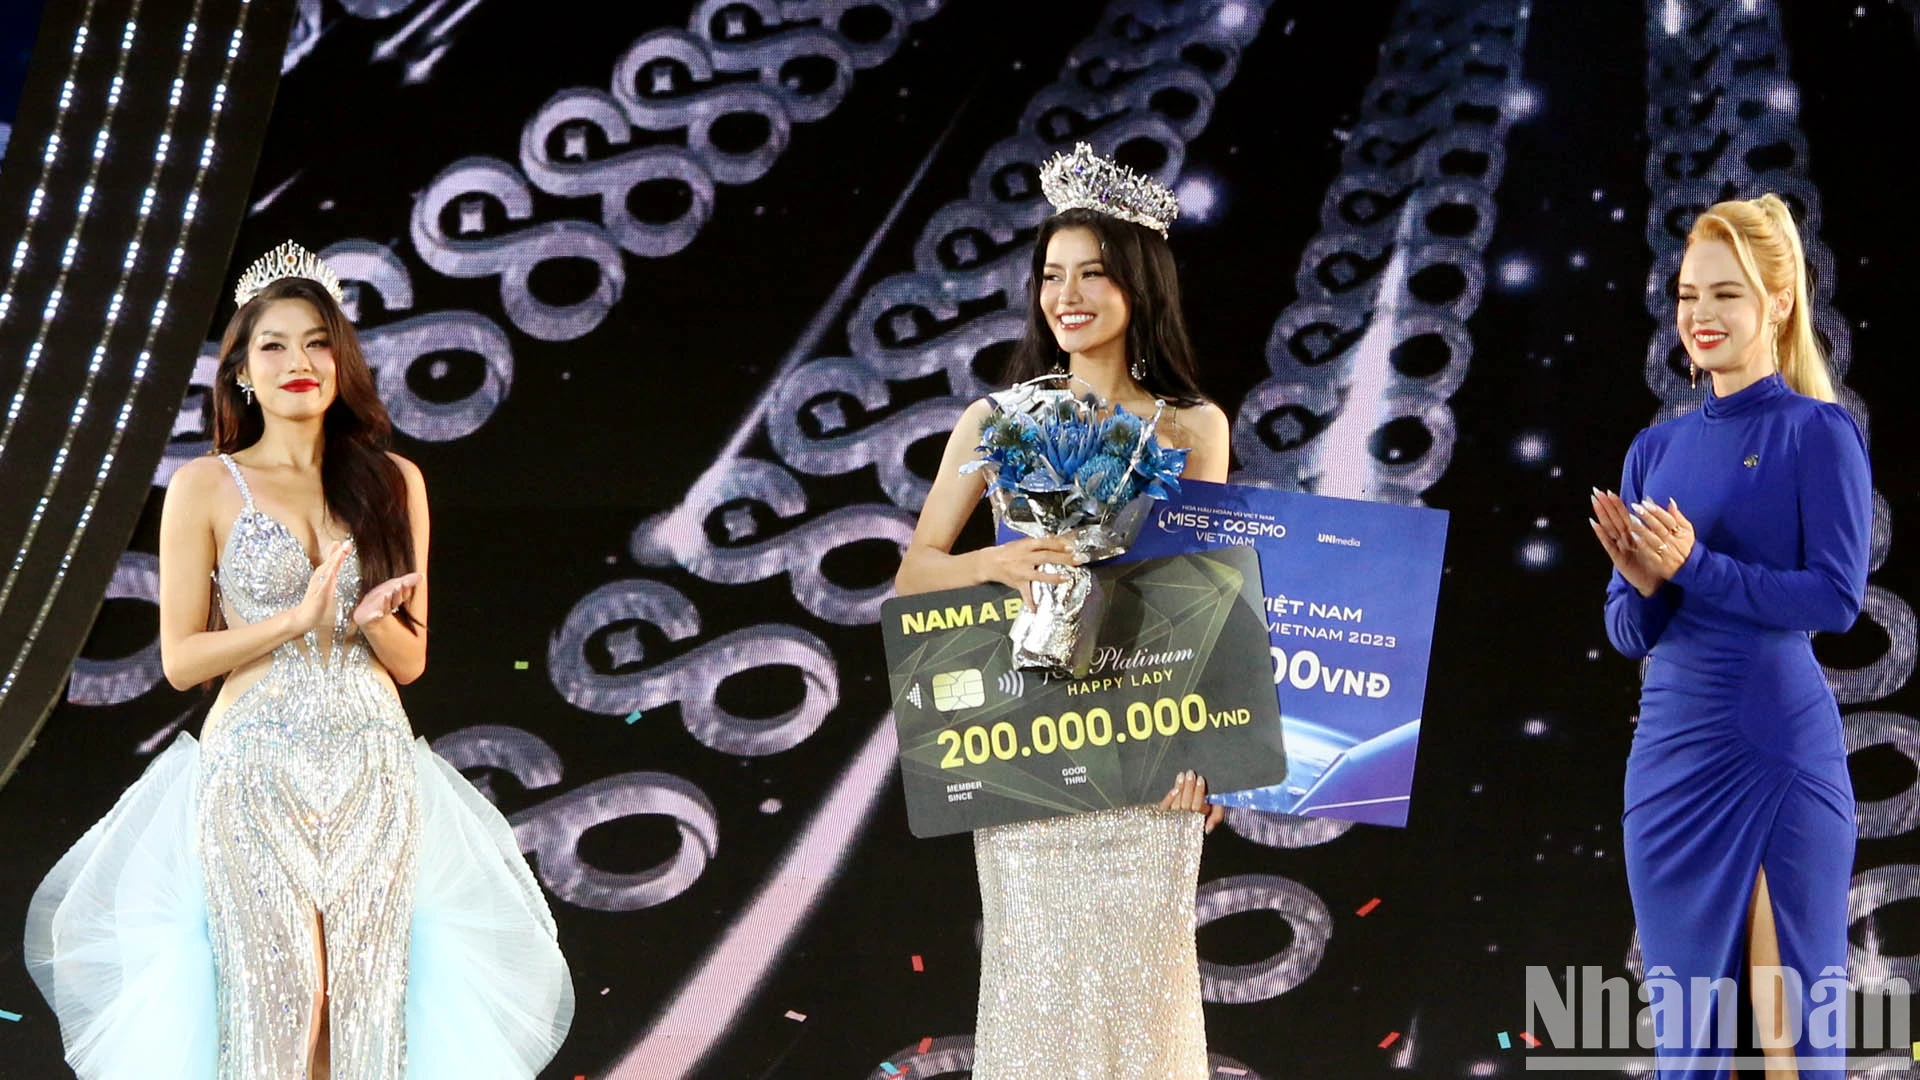 Mãn nhãn đêm chung kết cuộc thi Hoa hậu Hoàn vũ Việt Nam 2023 ảnh 17